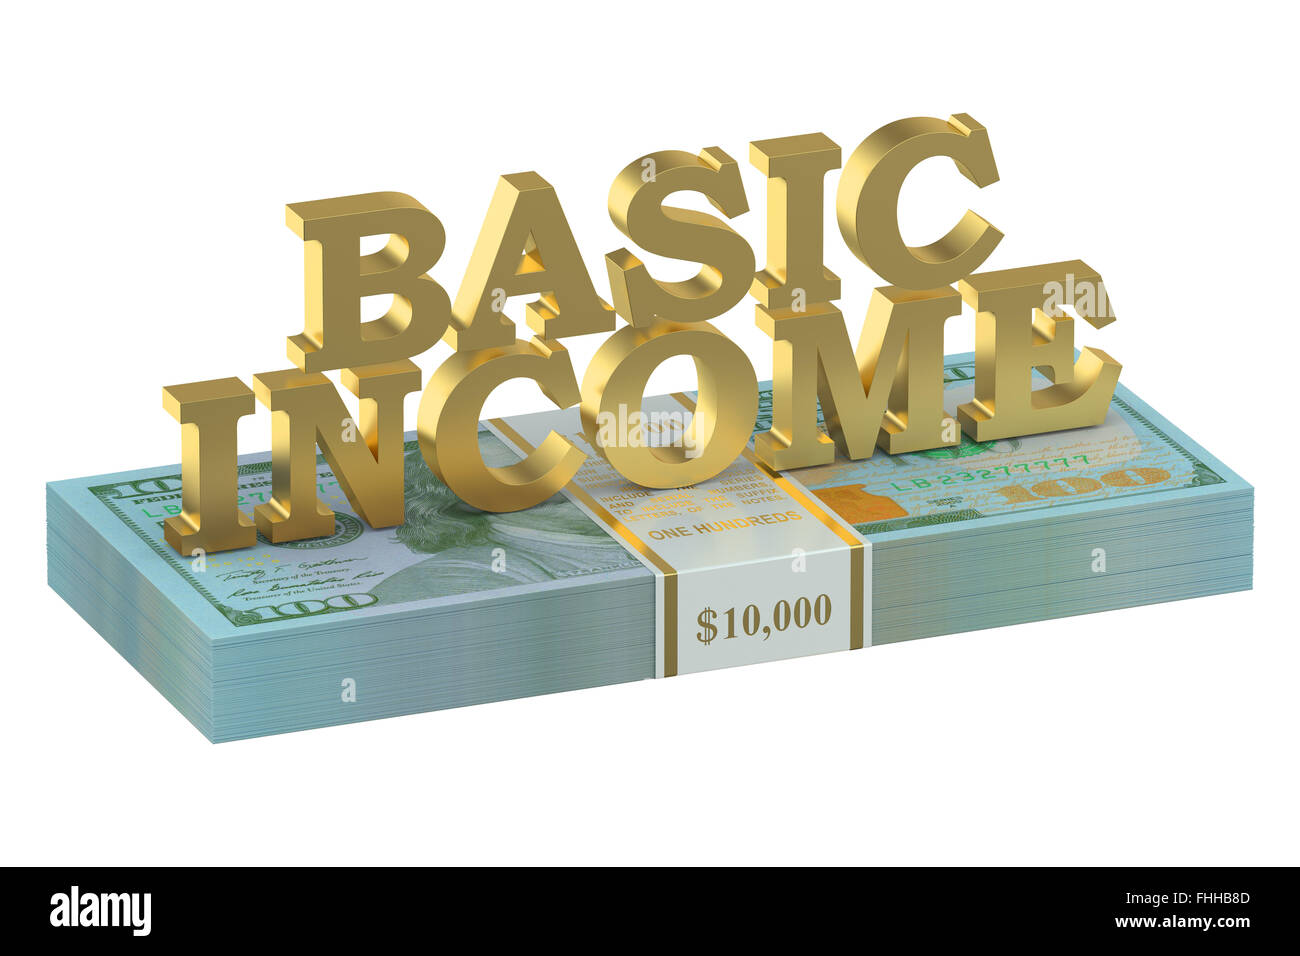 usa basic income concept Stock Photo